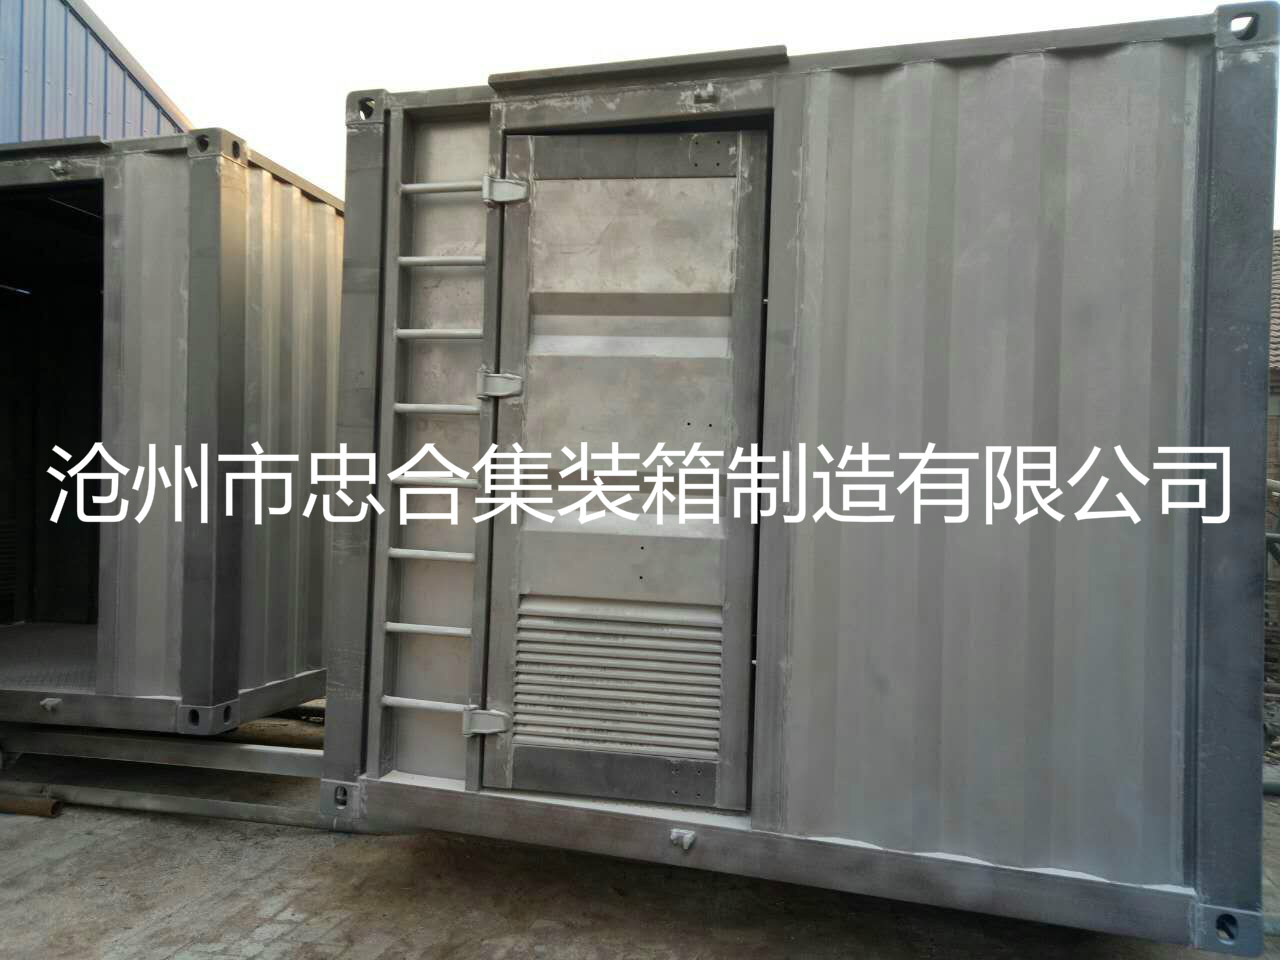 设备仓储集装箱 优质精品设备集装箱 污水处理集装箱